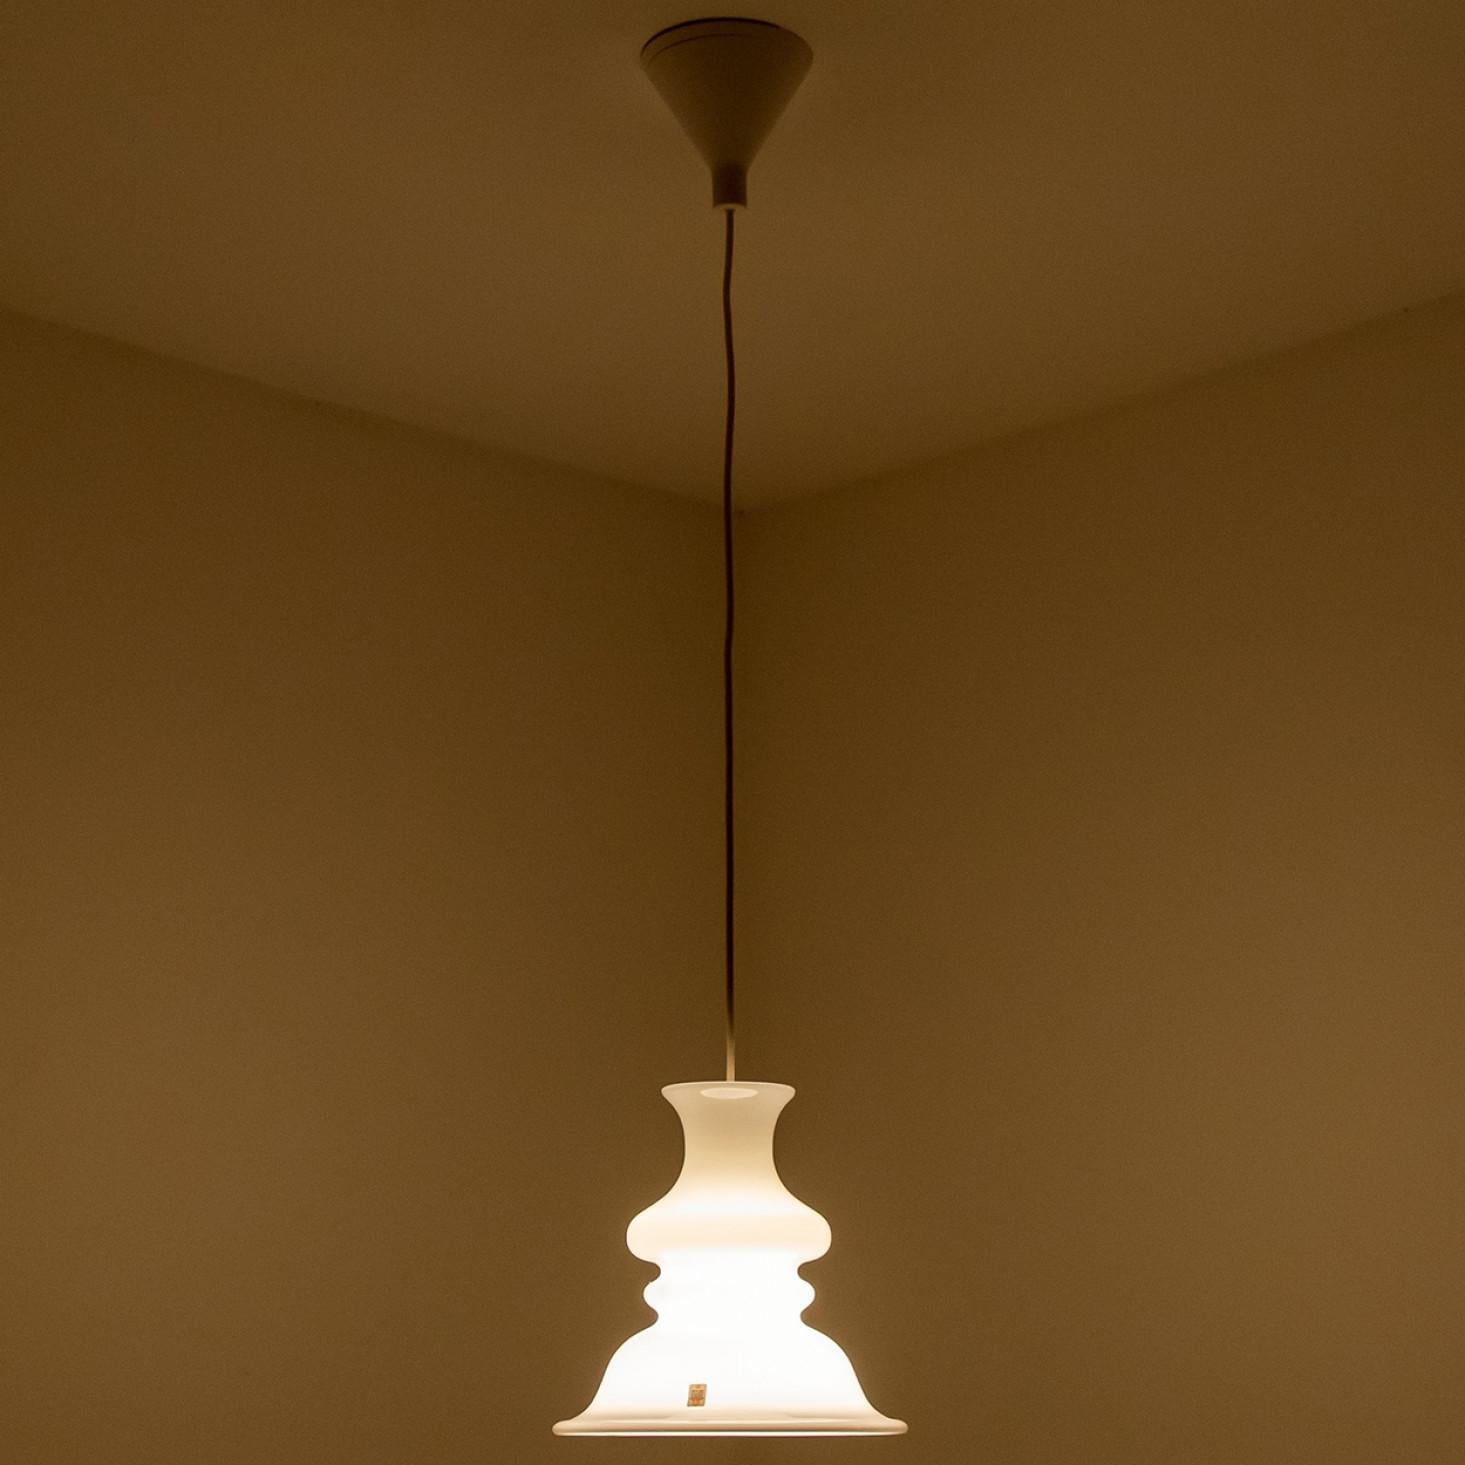 Dieses Paar schöner Glaslampen der dänischen Marke Holmegaard hat eine schöne weiße Farbe. Das Design stammt von Michael Bang, einem Designer, dessen Arbeiten heute bei Sammlern der Marke sehr begehrt sind. Modell Etude, eine außergewöhnliche Form!